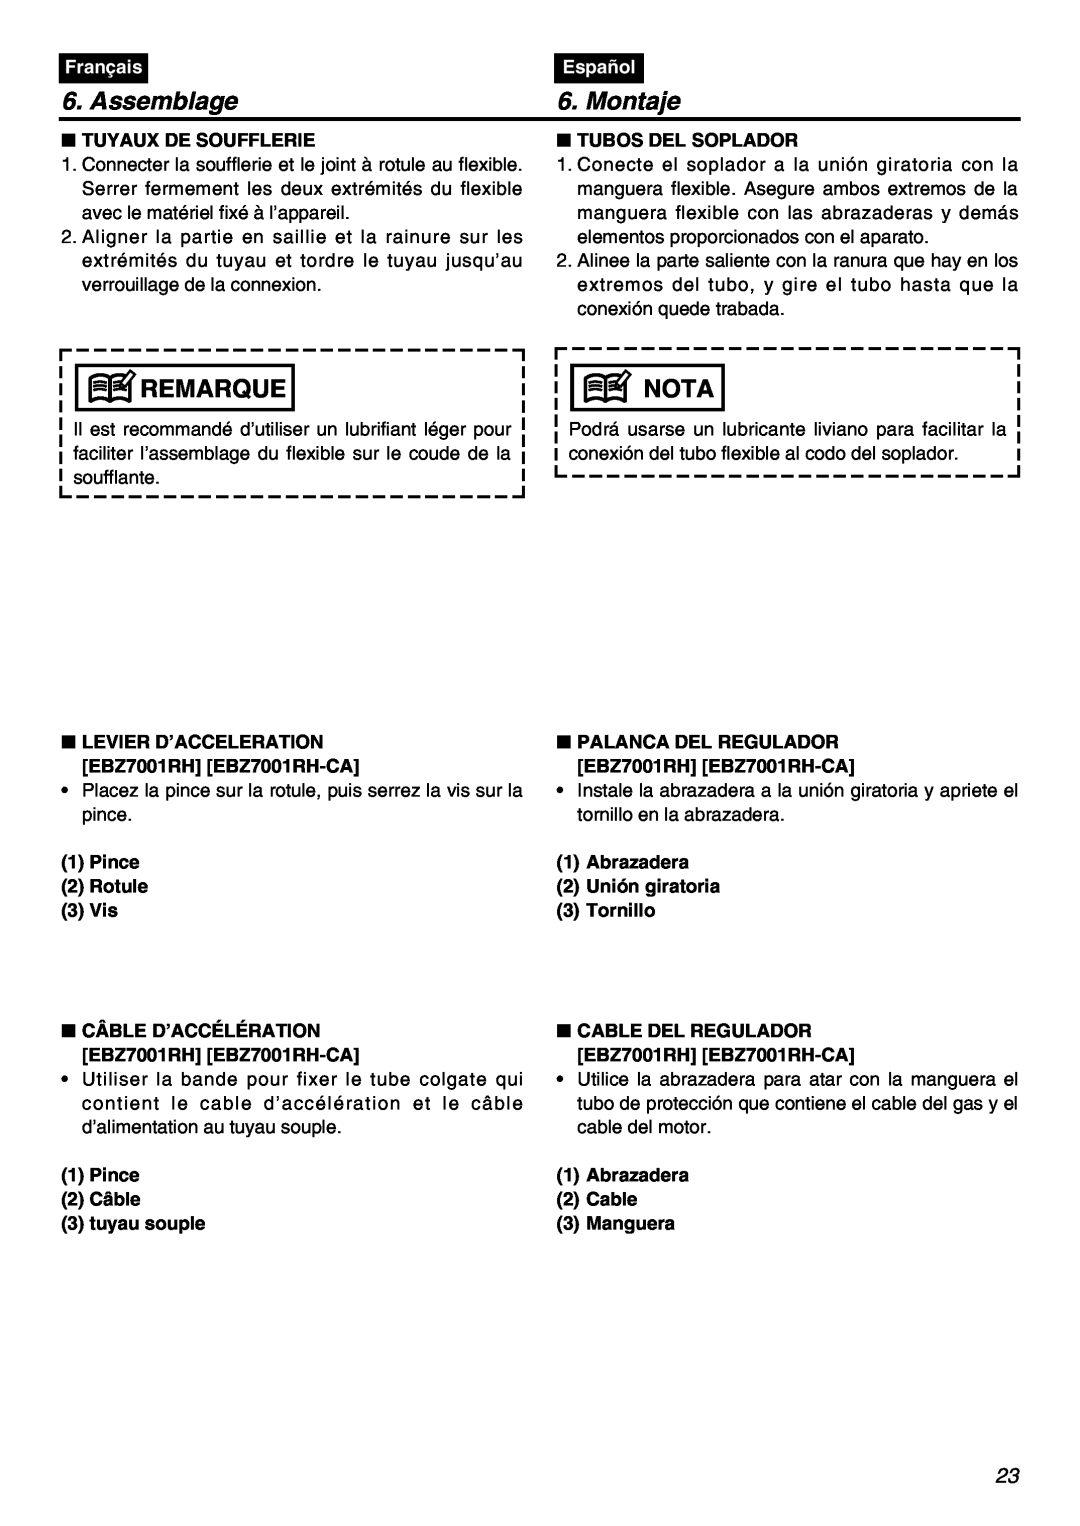 RedMax EBZ7001RH manual Assemblage, Montaje, Tuyaux De Soufflerie, Tubos Del Soplador, Remarque, Nota, Français, Español 